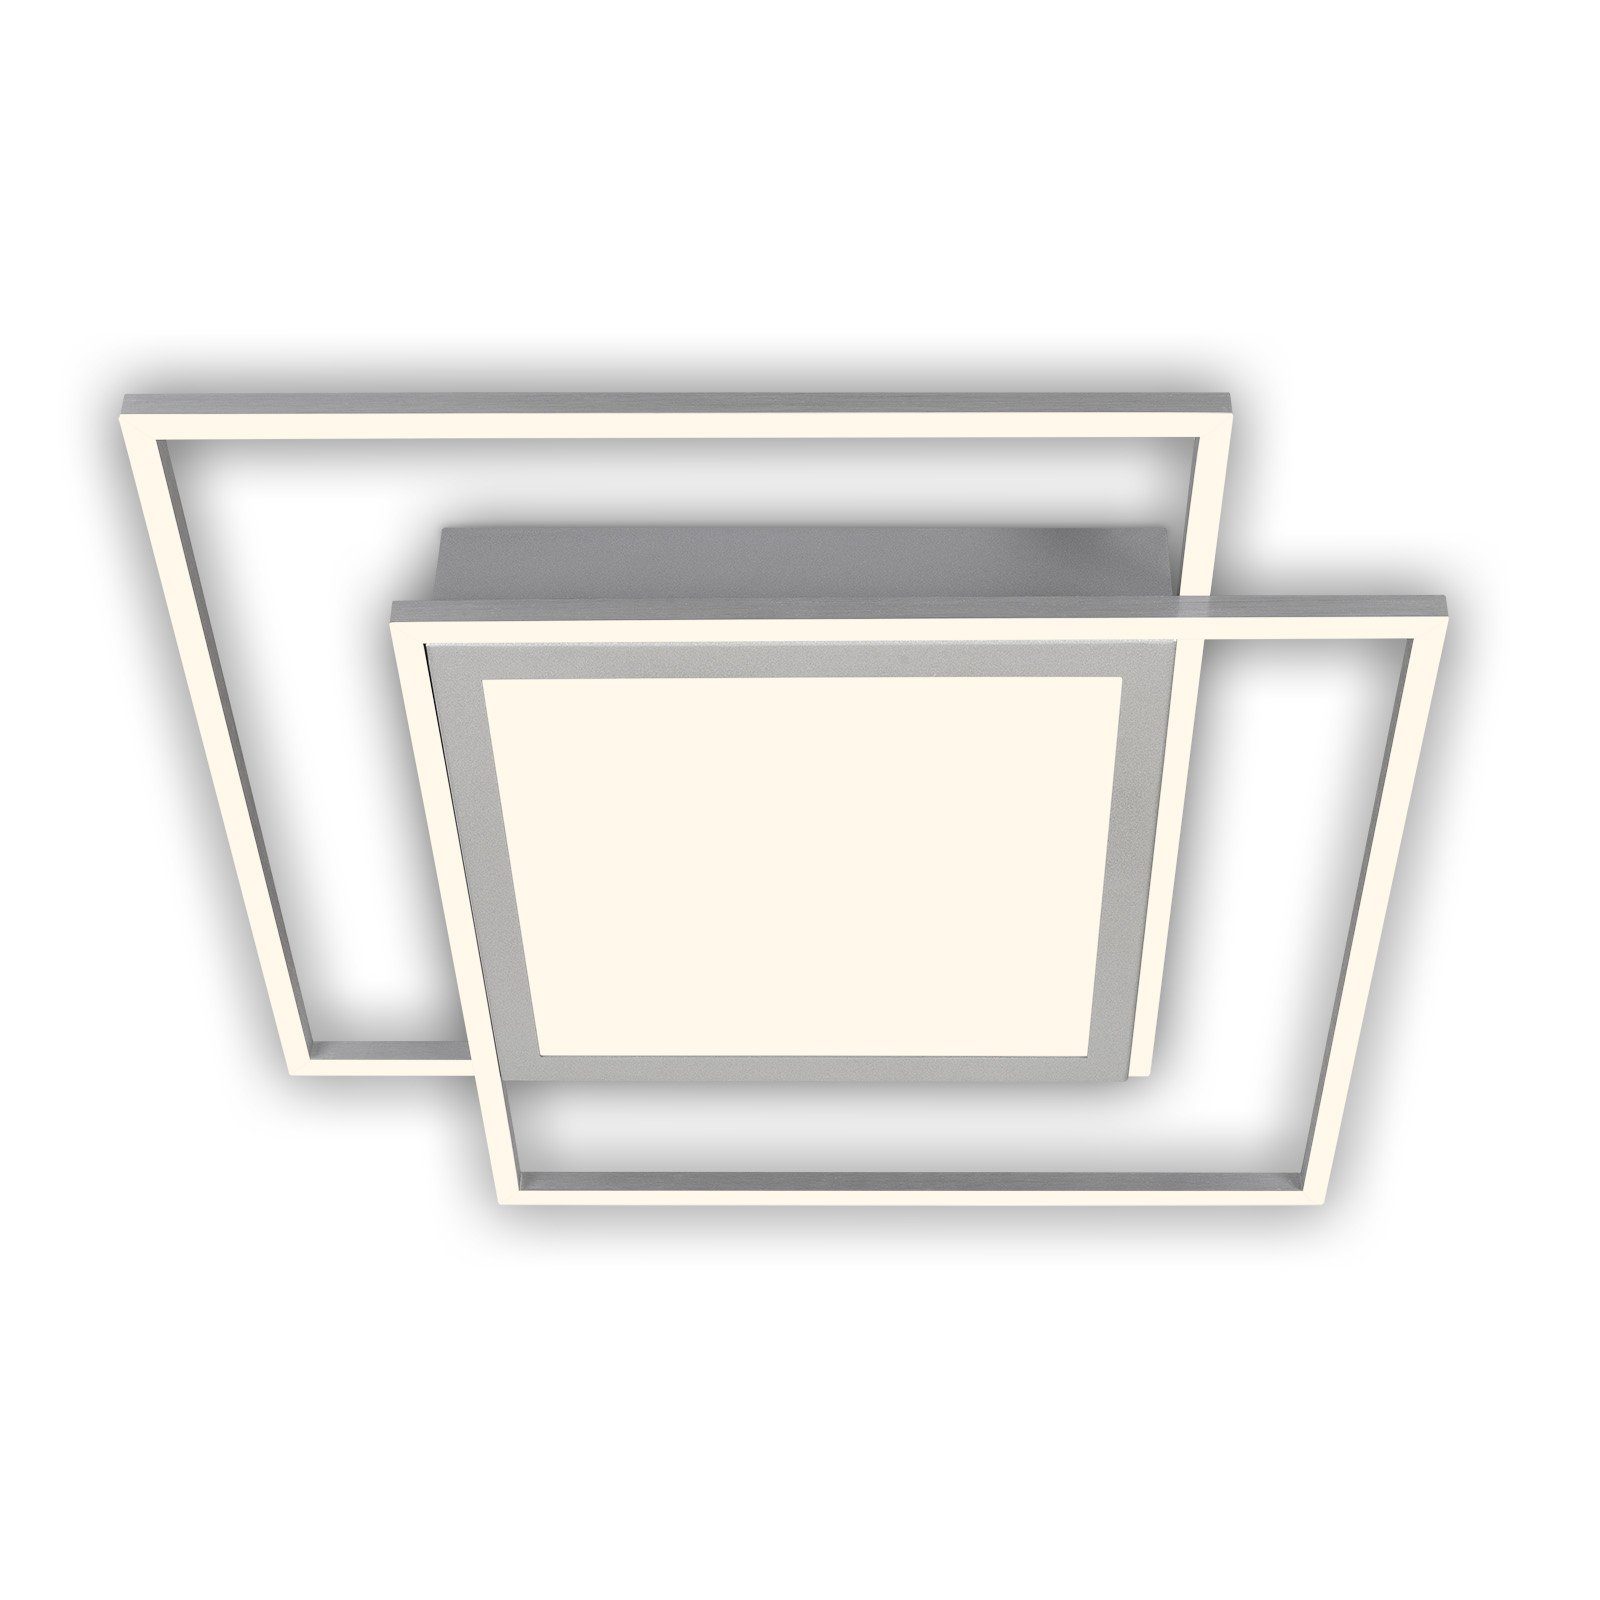 Briloner Leuchten LED Deckenleuchte 3740-019, LED fest verbaut, Warmweiß, Getrennt schaltbar, 3000K warmweiß, 51 W  5800 lm, 51,5 cm